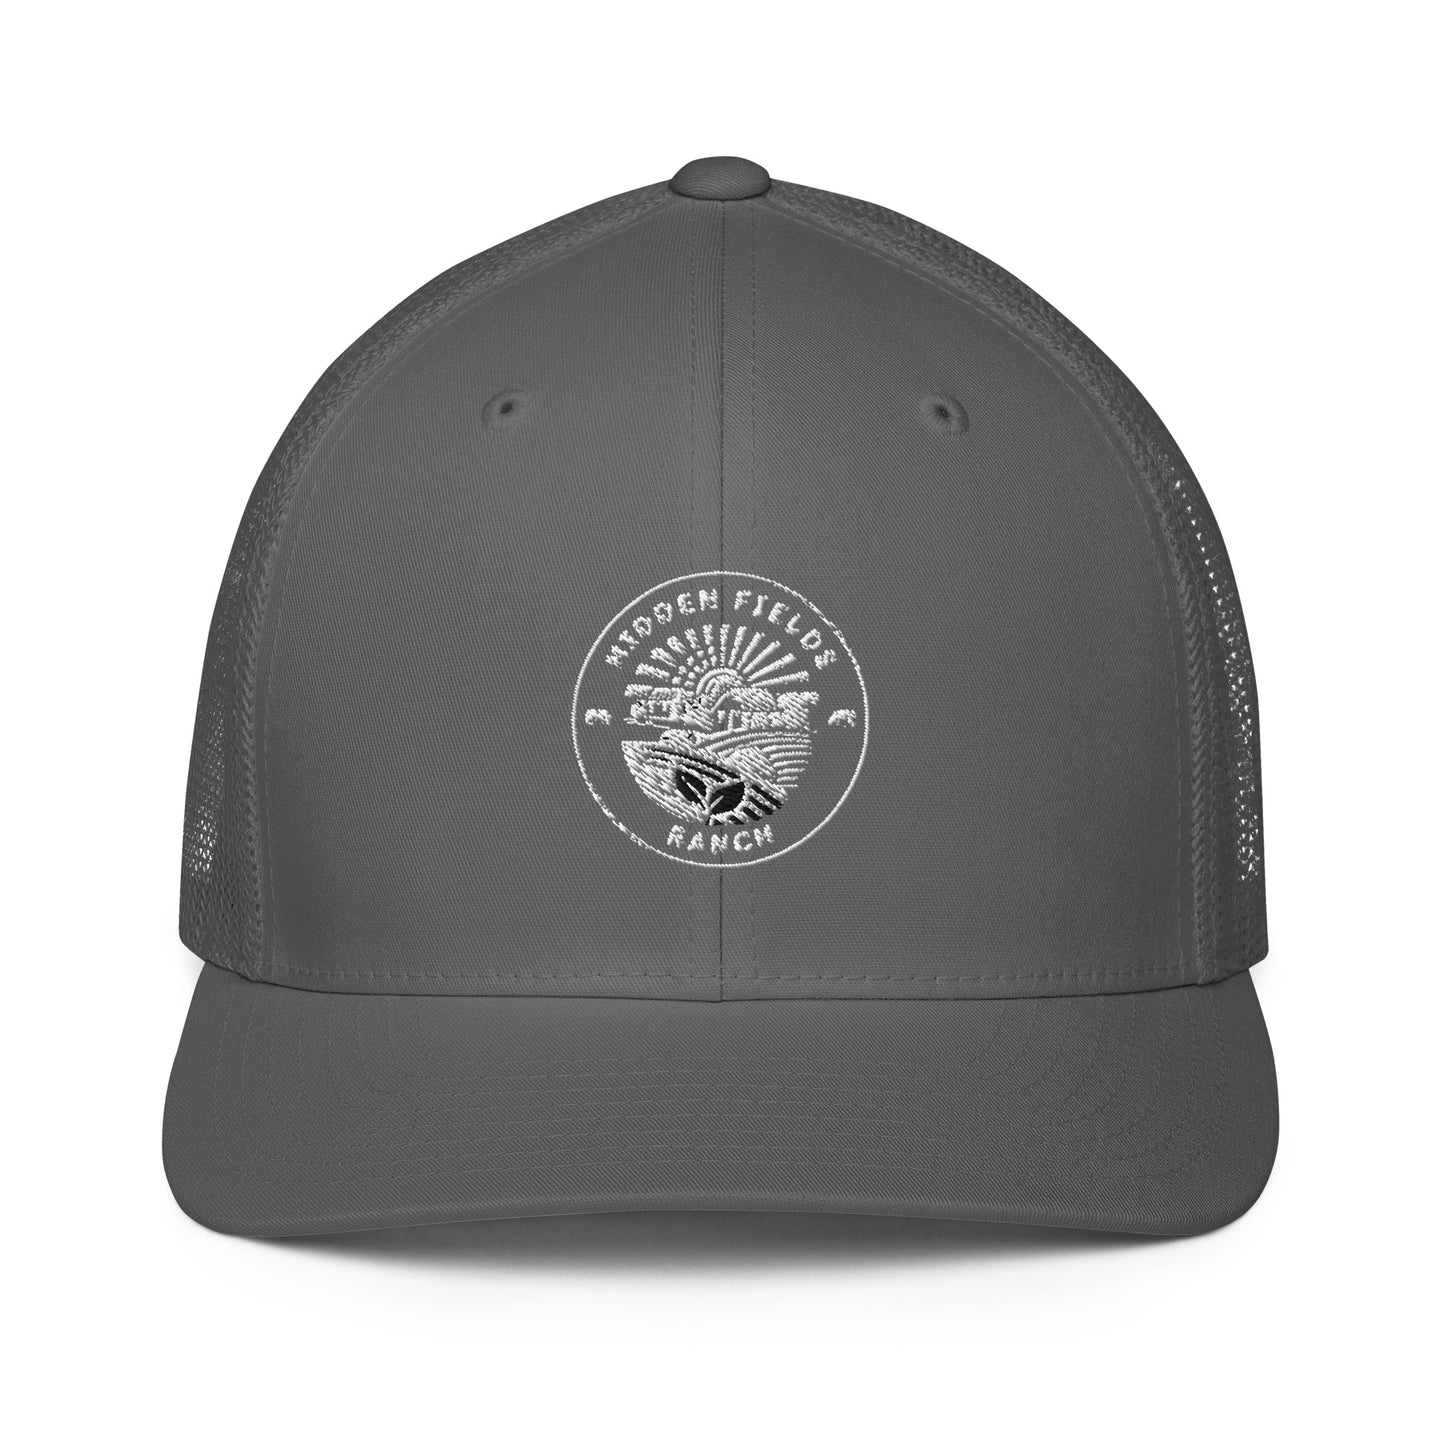 Hidden Fields trucker cap